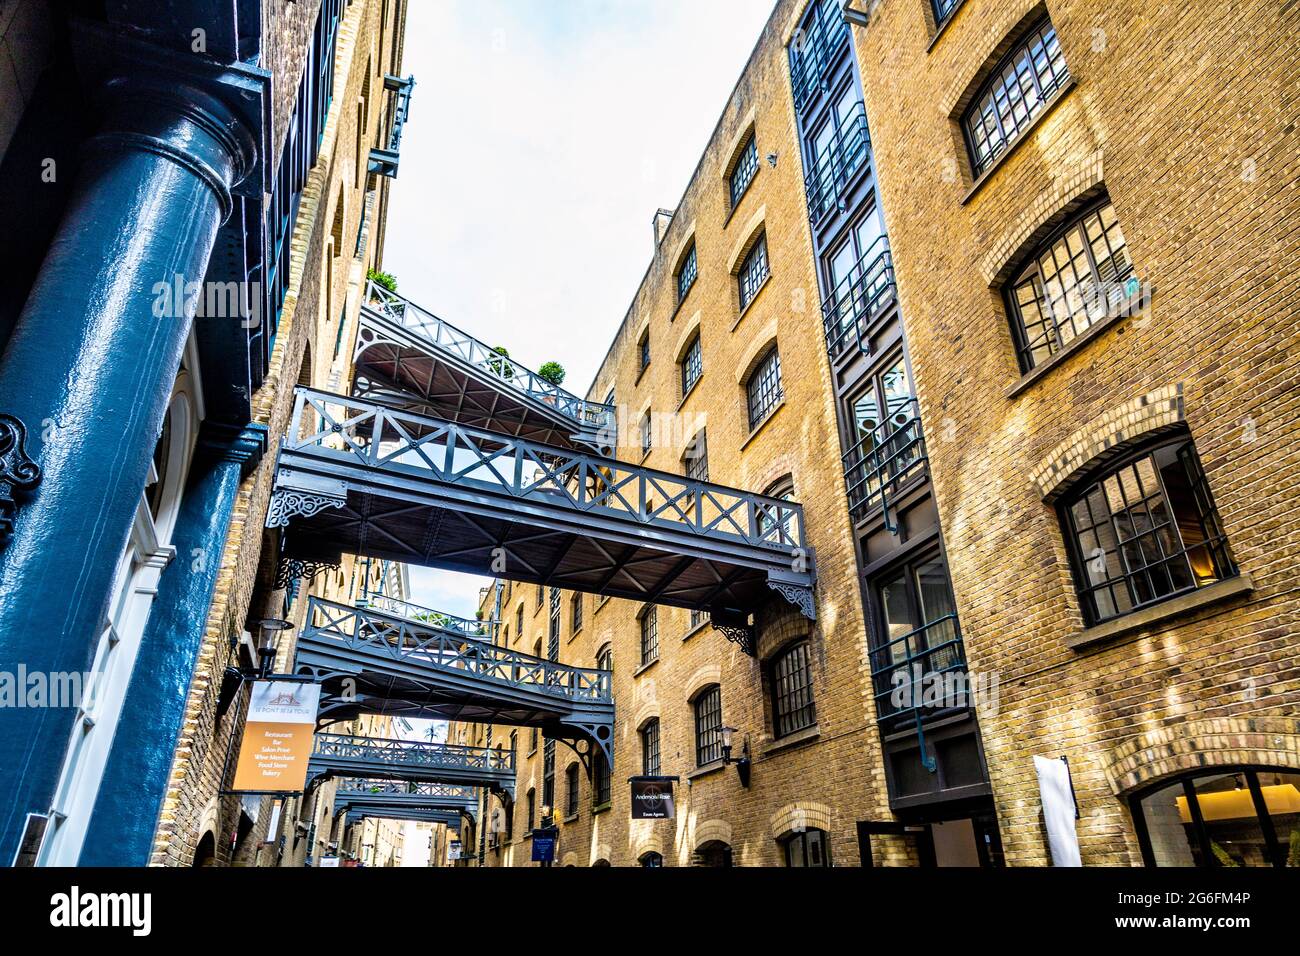 Walkways between warehouses at Shad Thames, London, UK Stock Photo